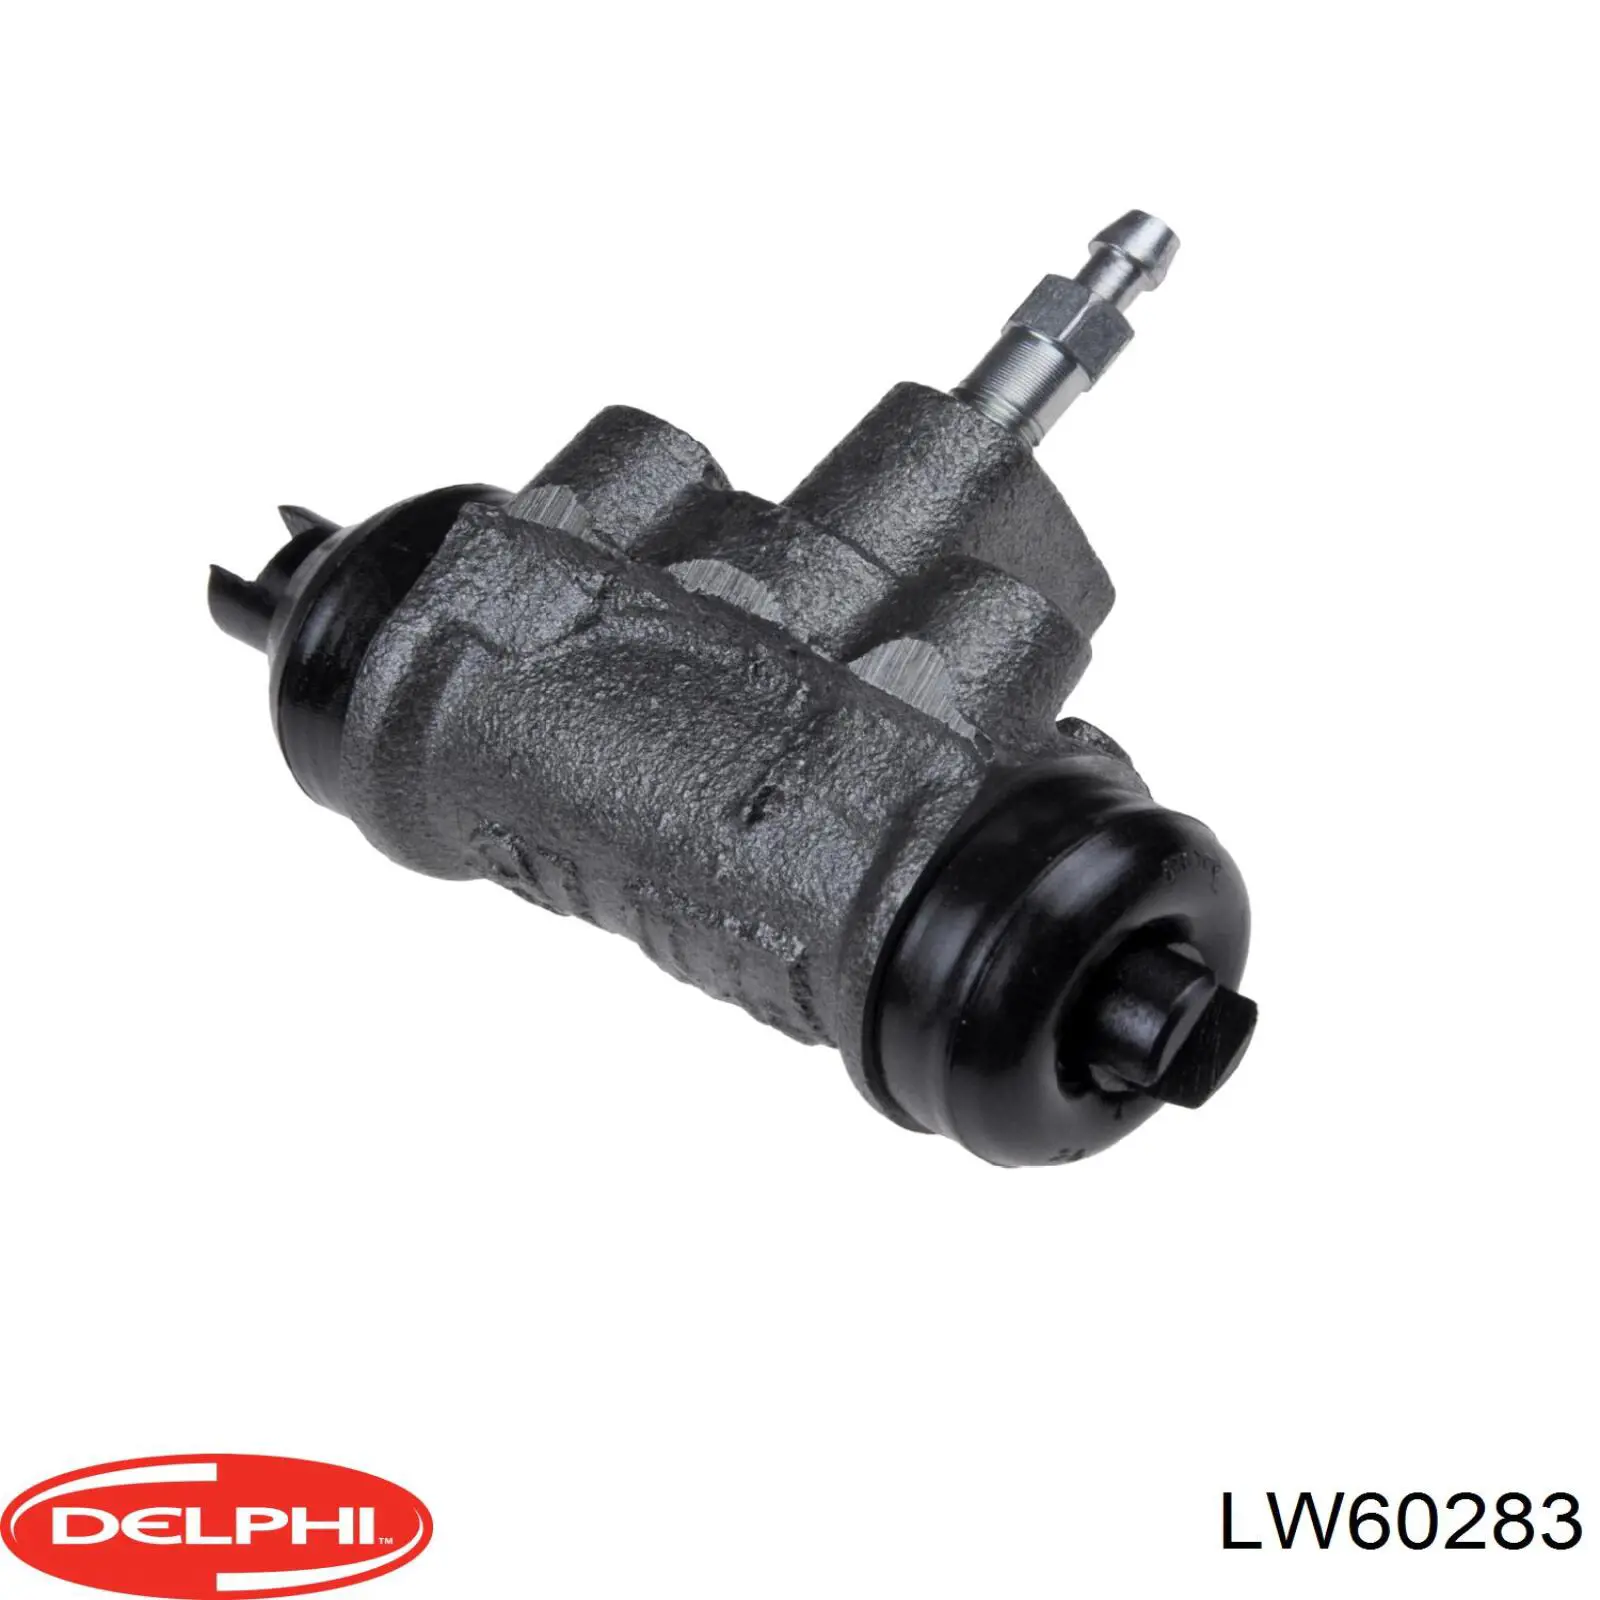 LW60283 Delphi цилиндр тормозной колесный рабочий задний